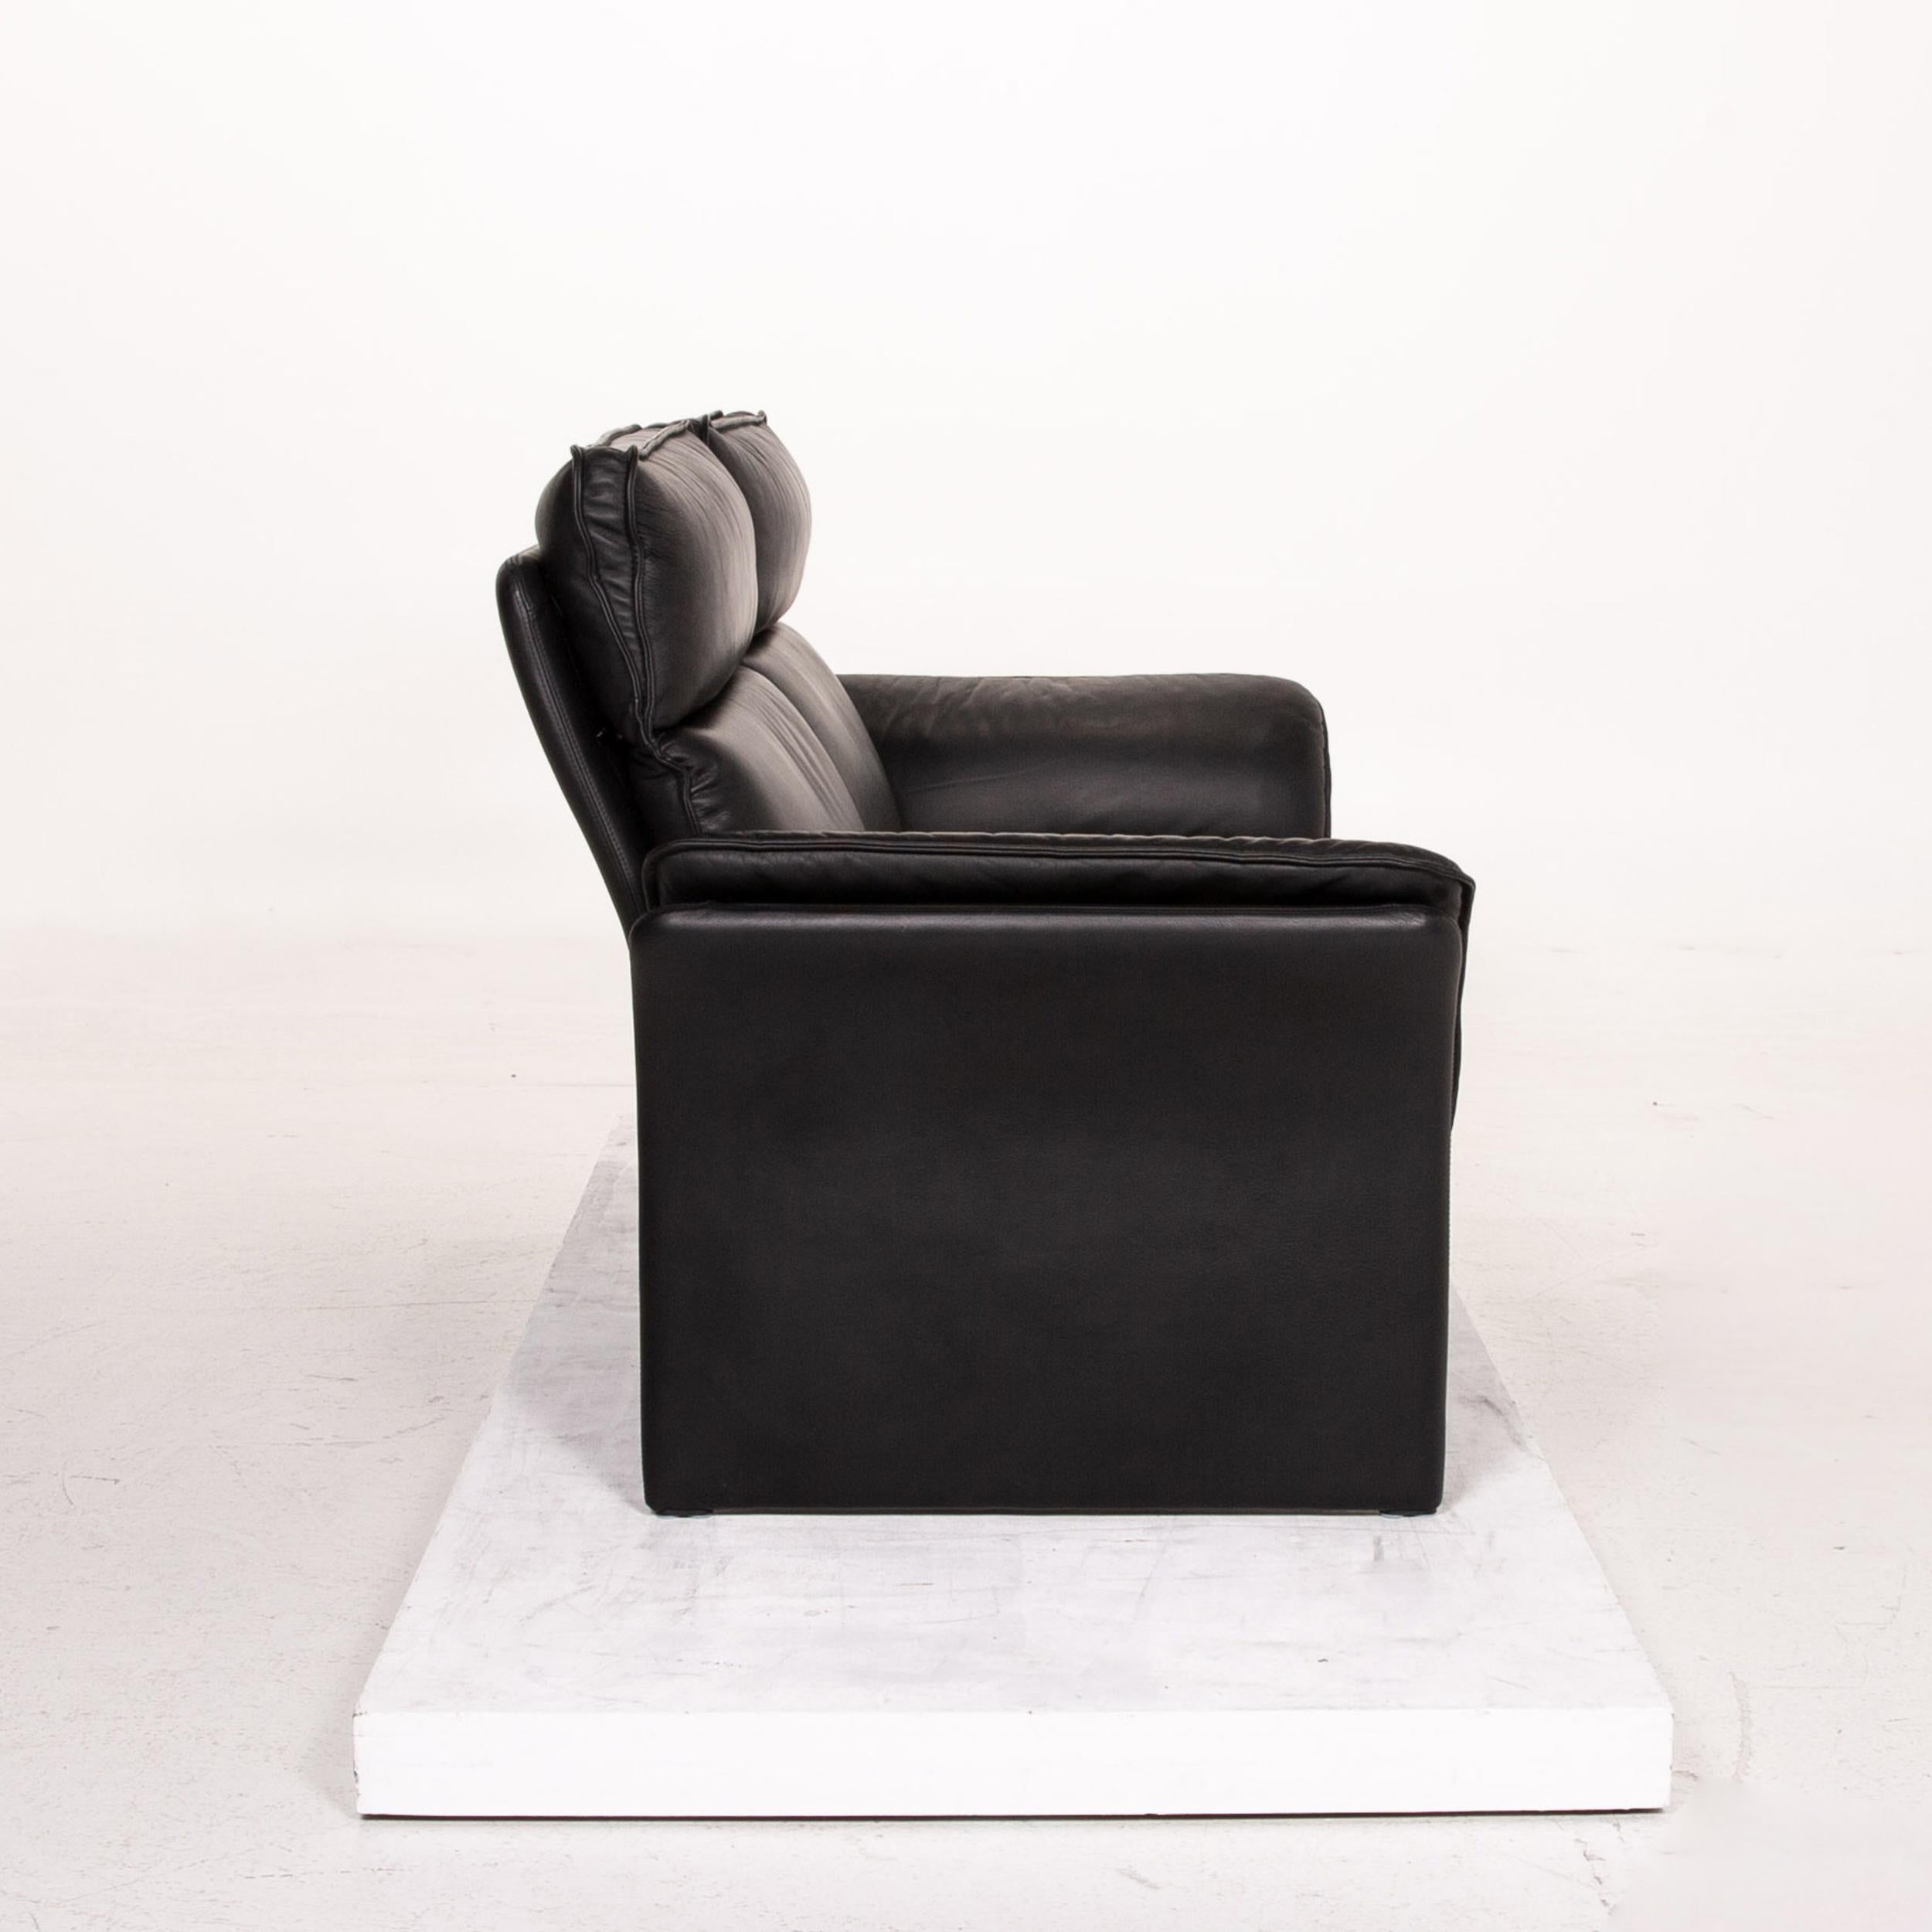 Three-Point Scala Leather Sofa Set Black 1 Three-Seat 1 Two-Seat 10